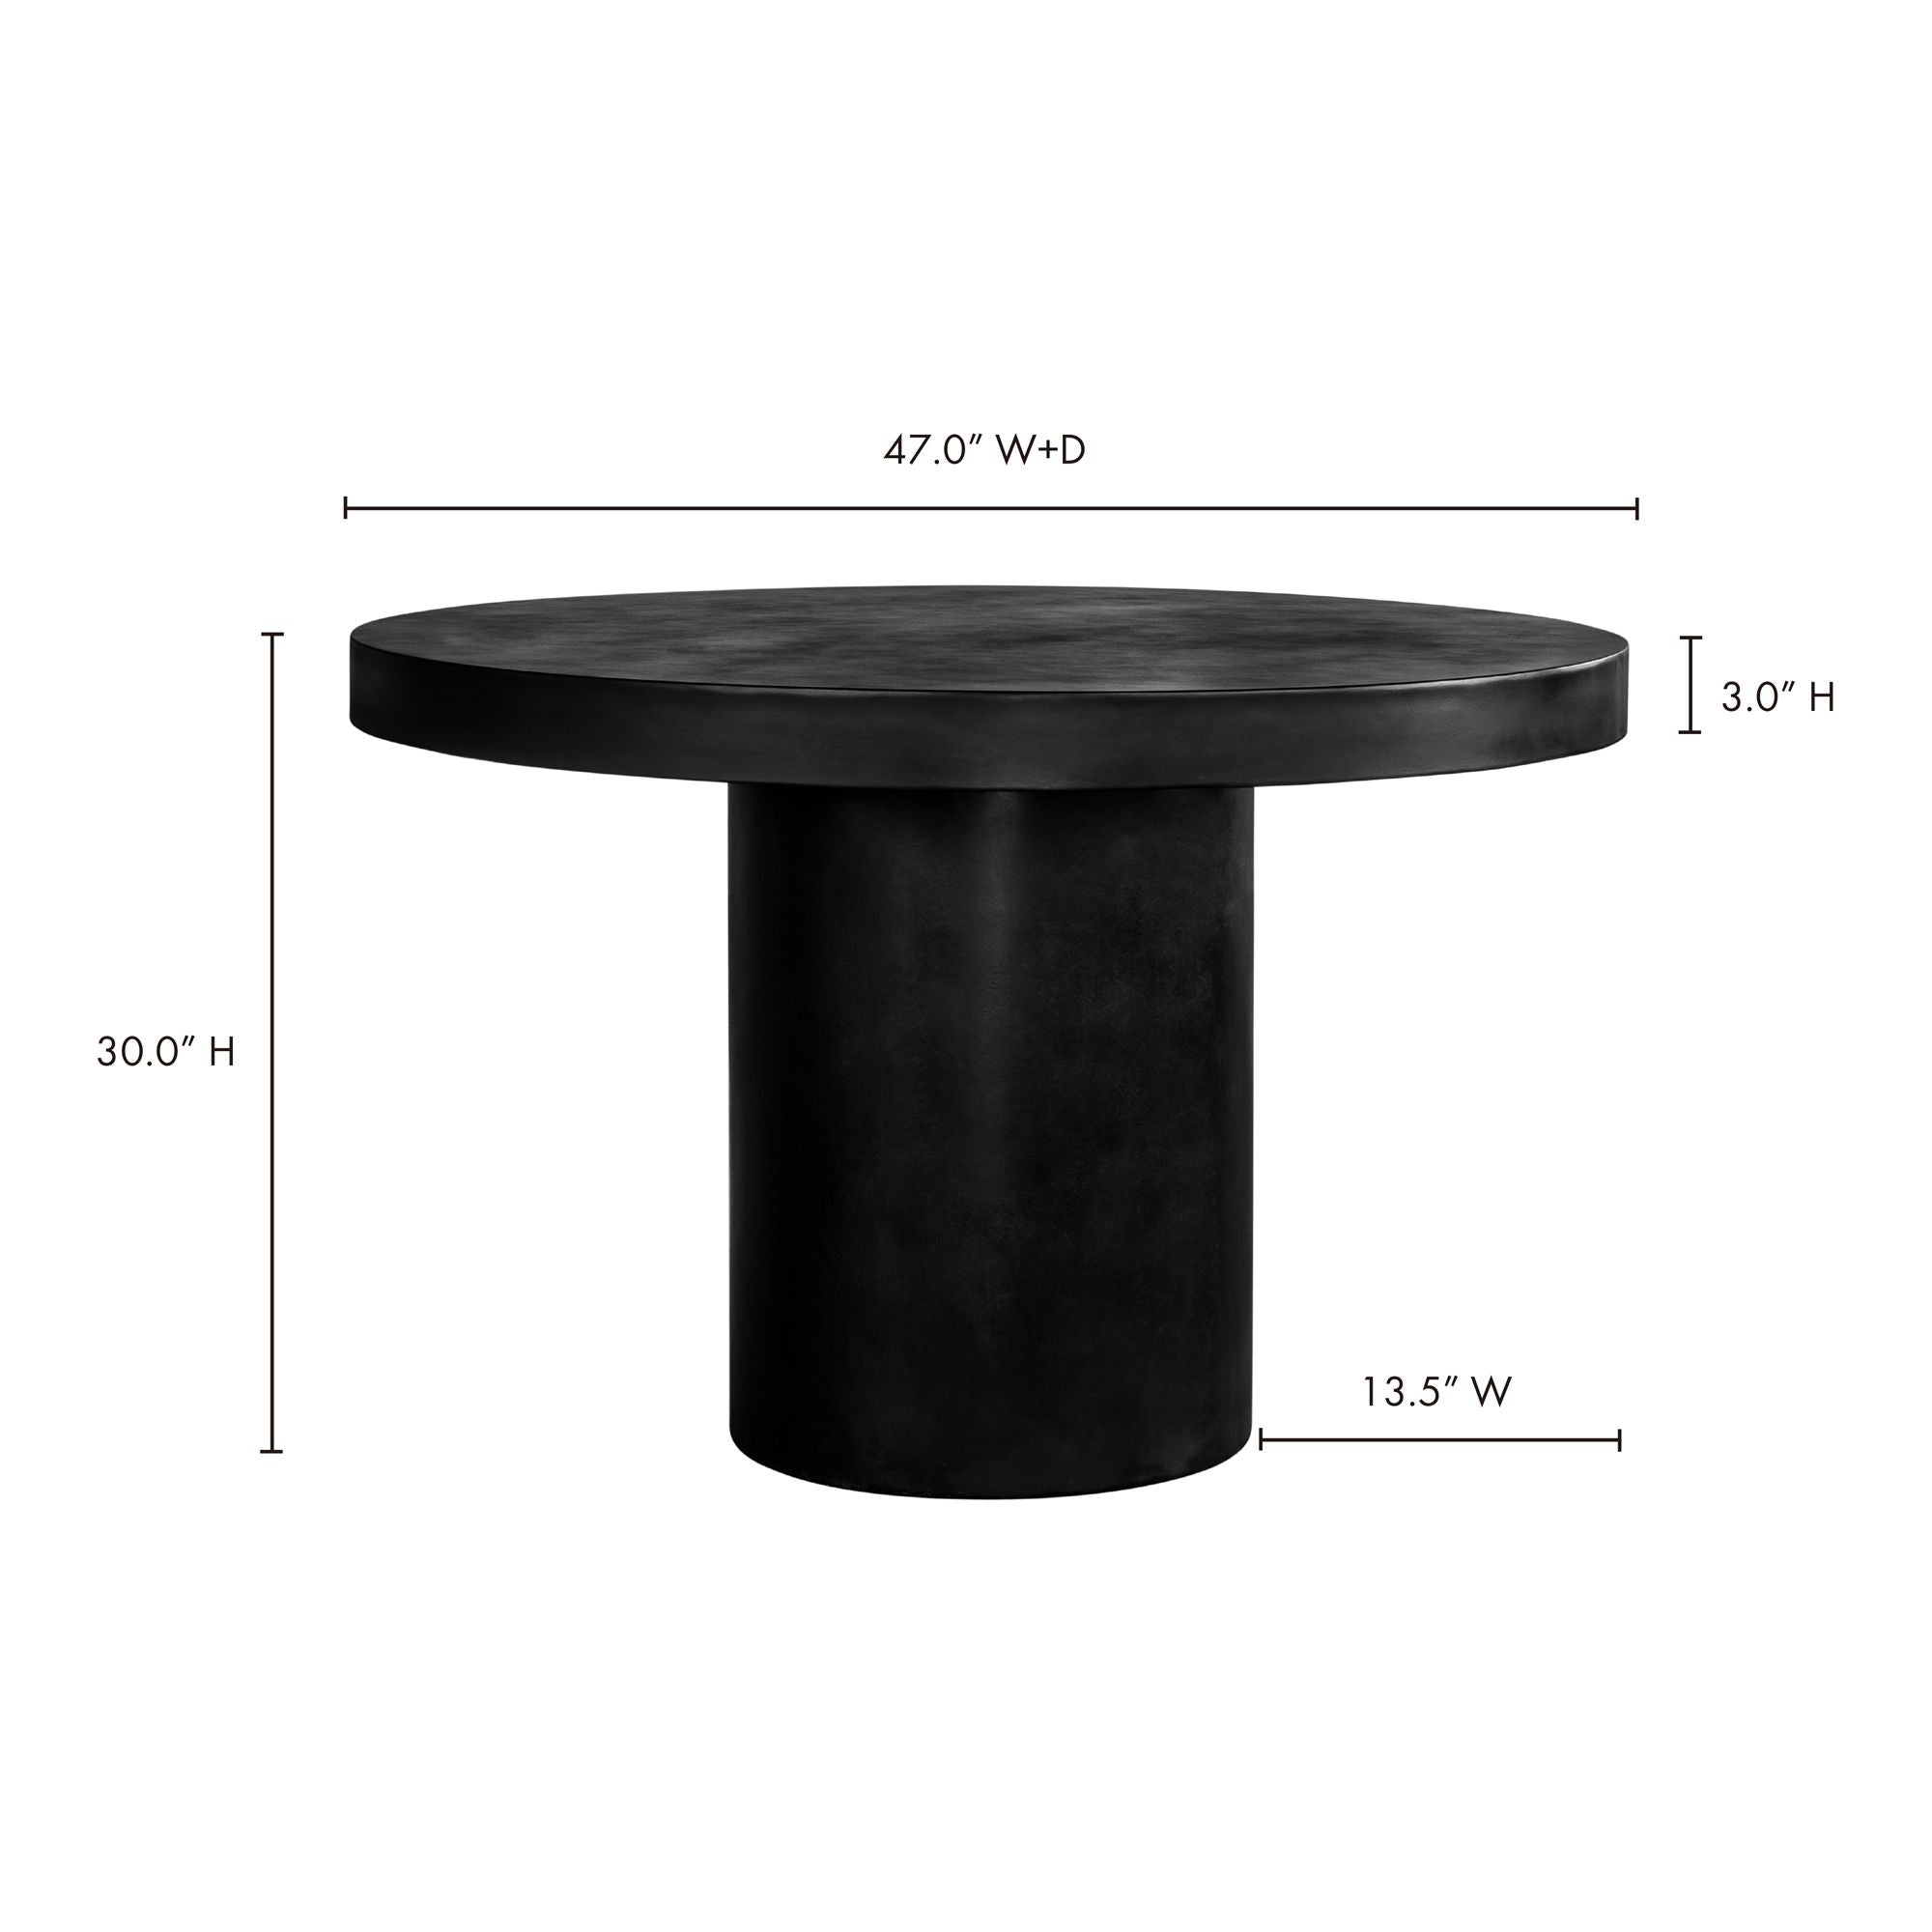 Cassius - Round Outdoor Dining Table - Black - Concrete